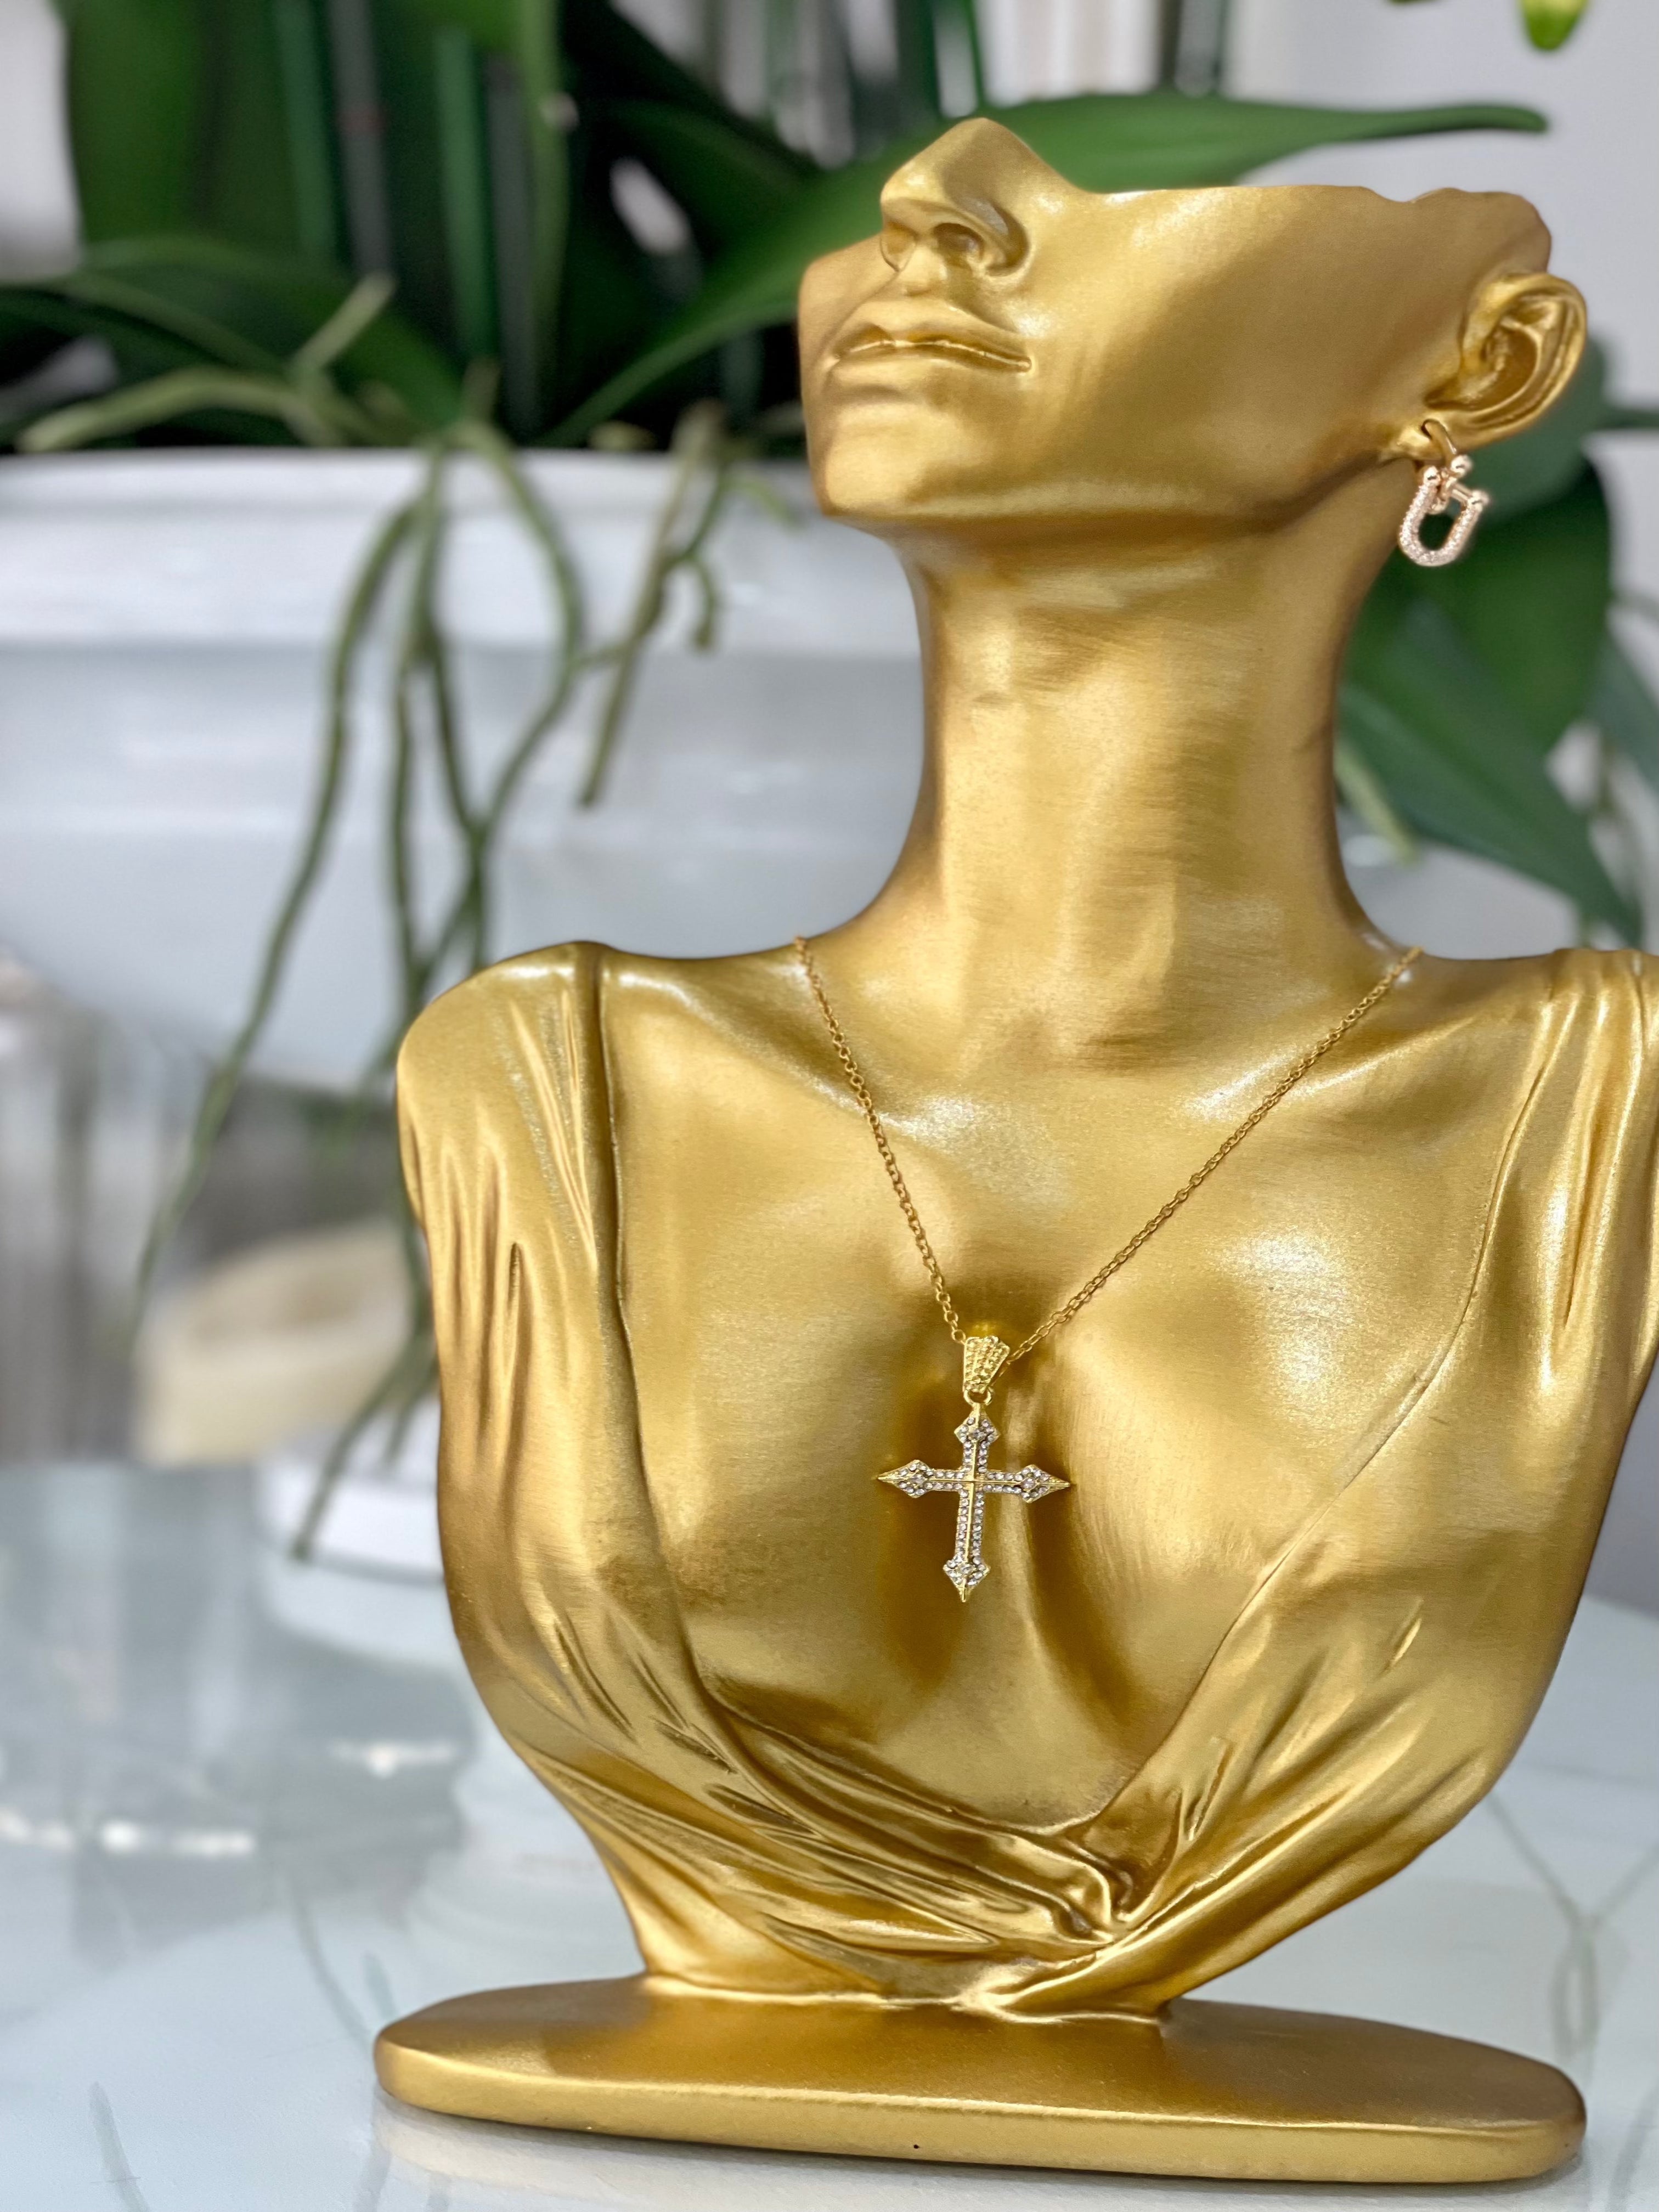 Gold Plated Diamanté Cross Pendant Necklace